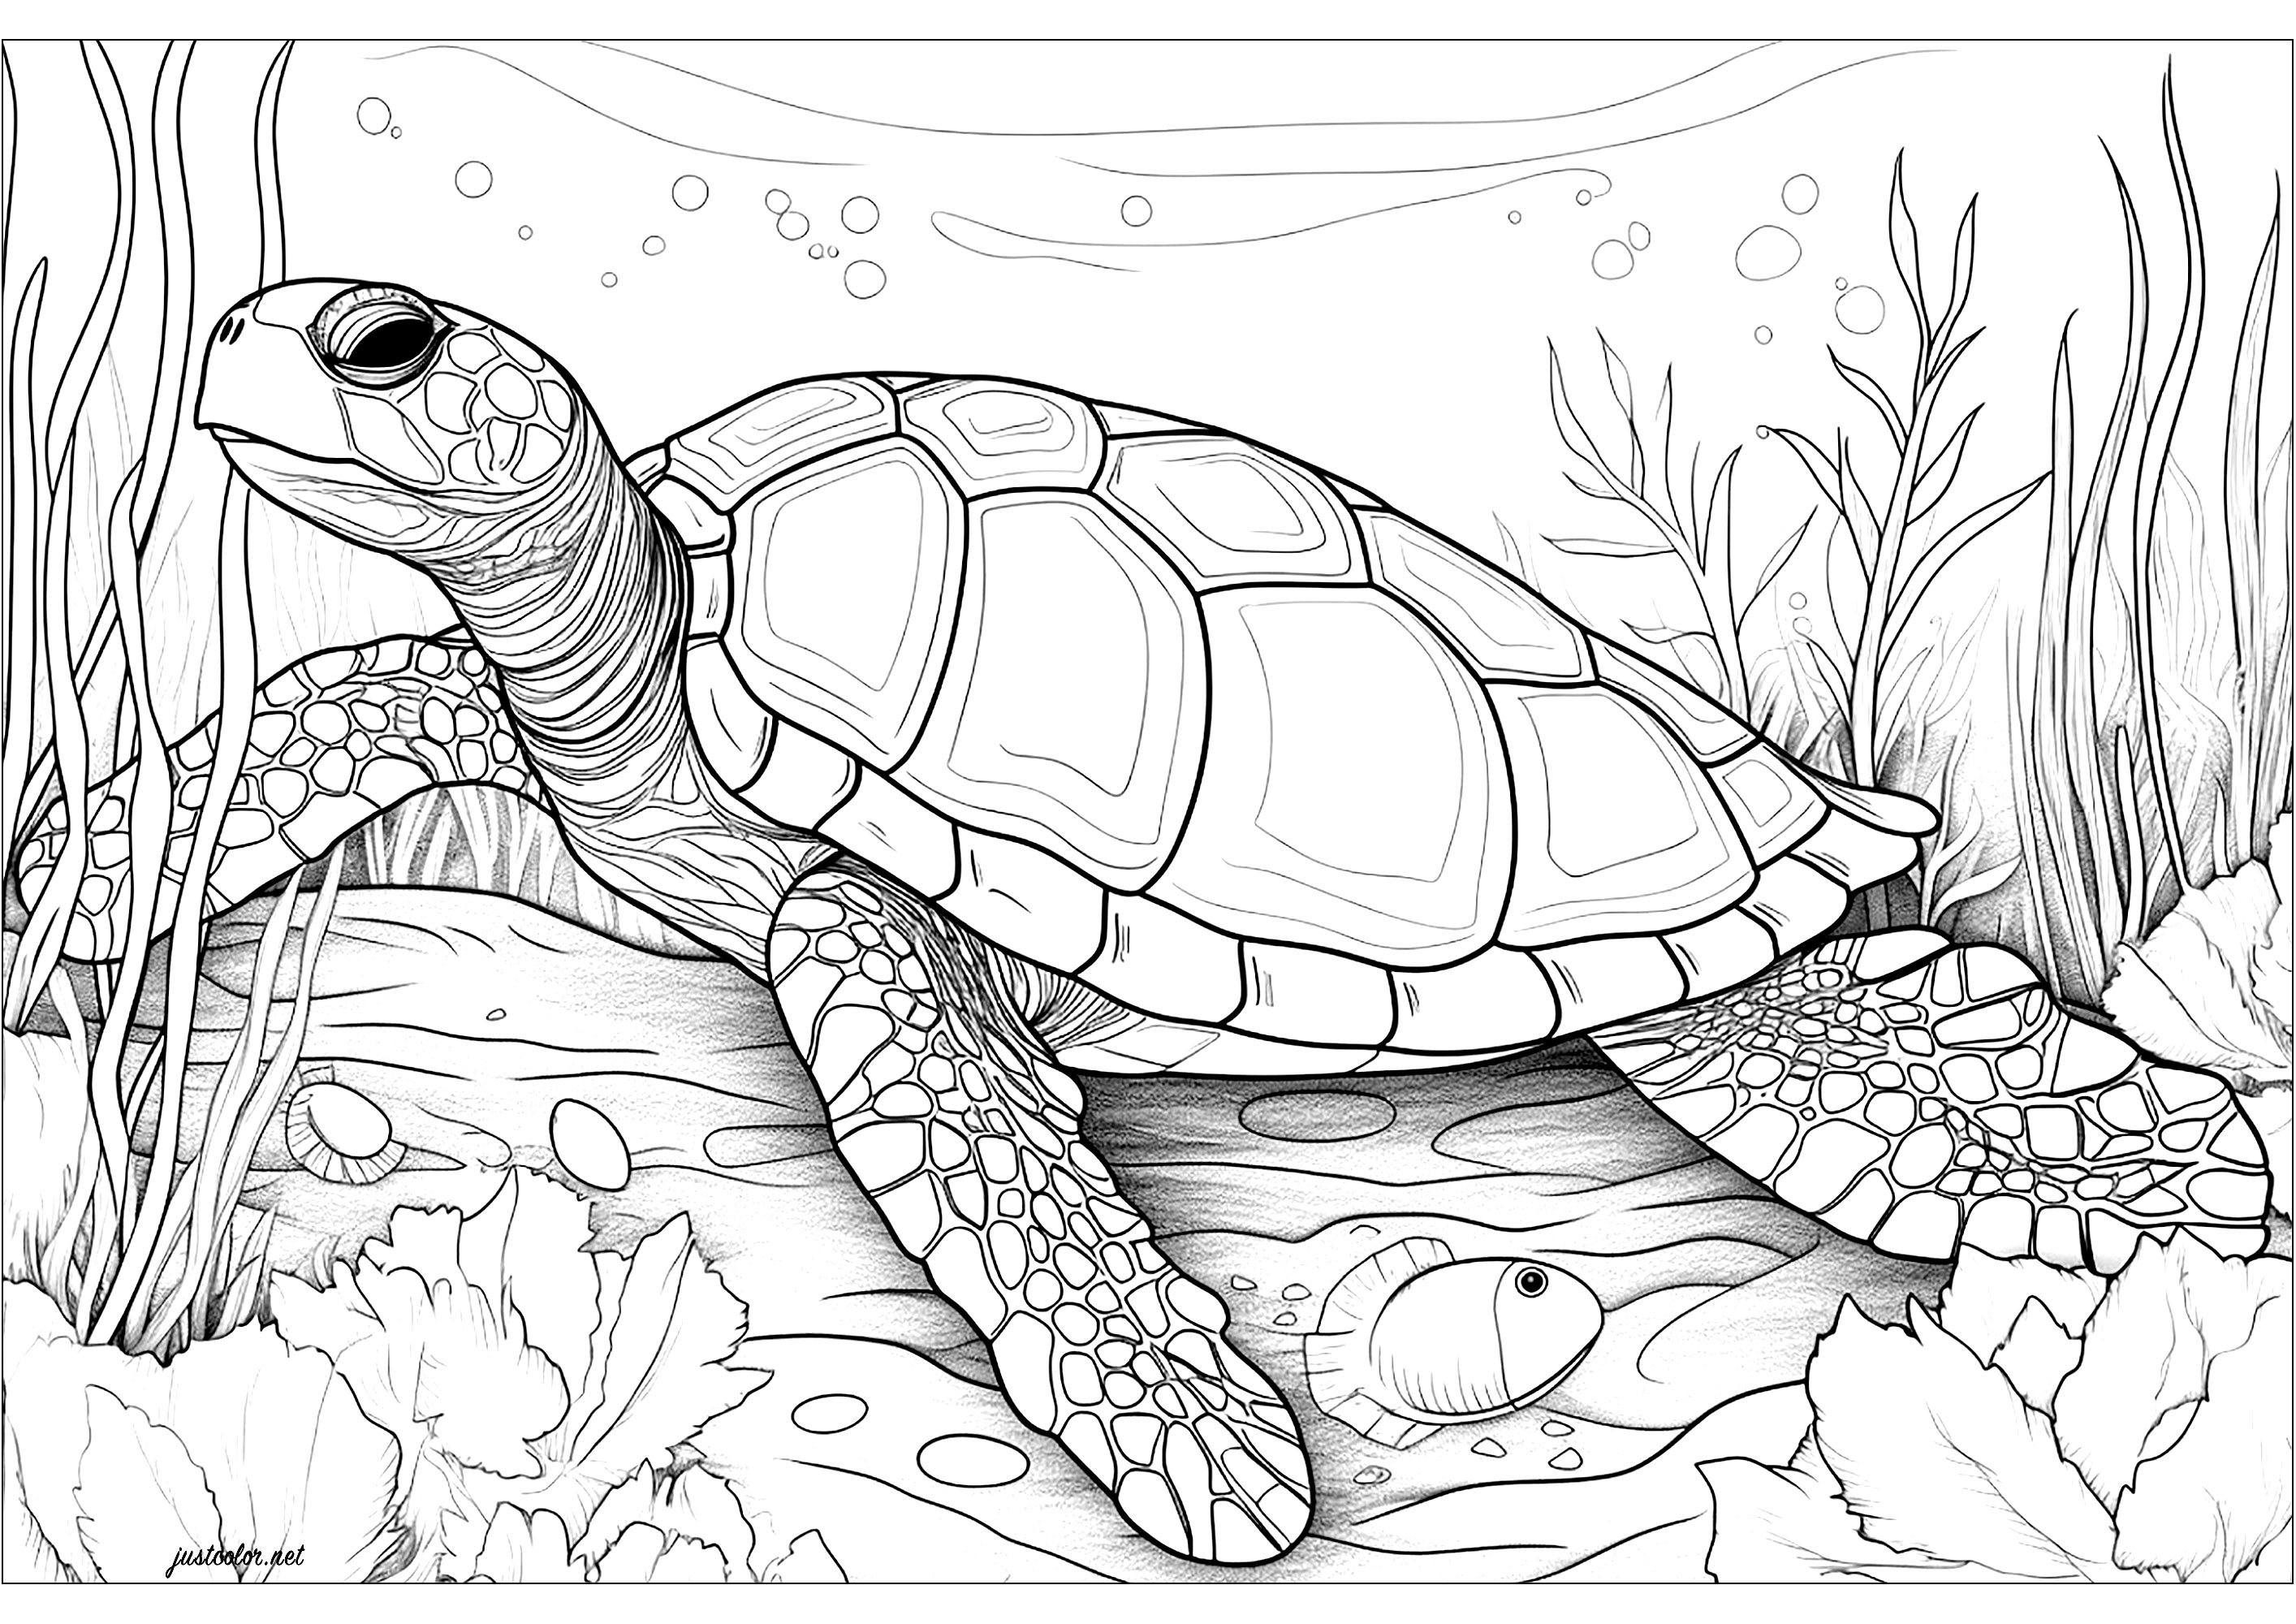 Tartaruga marina di grandi dimensioni. Una tartaruga marina molto realistica, sta a voi colorare i dettagli del suo guscio e delle sue squame. Lo sfondo è pieno di bolle e vegetazione acquatica, che conferiscono a questa pagina da colorare un'atmosfera calma e serena.